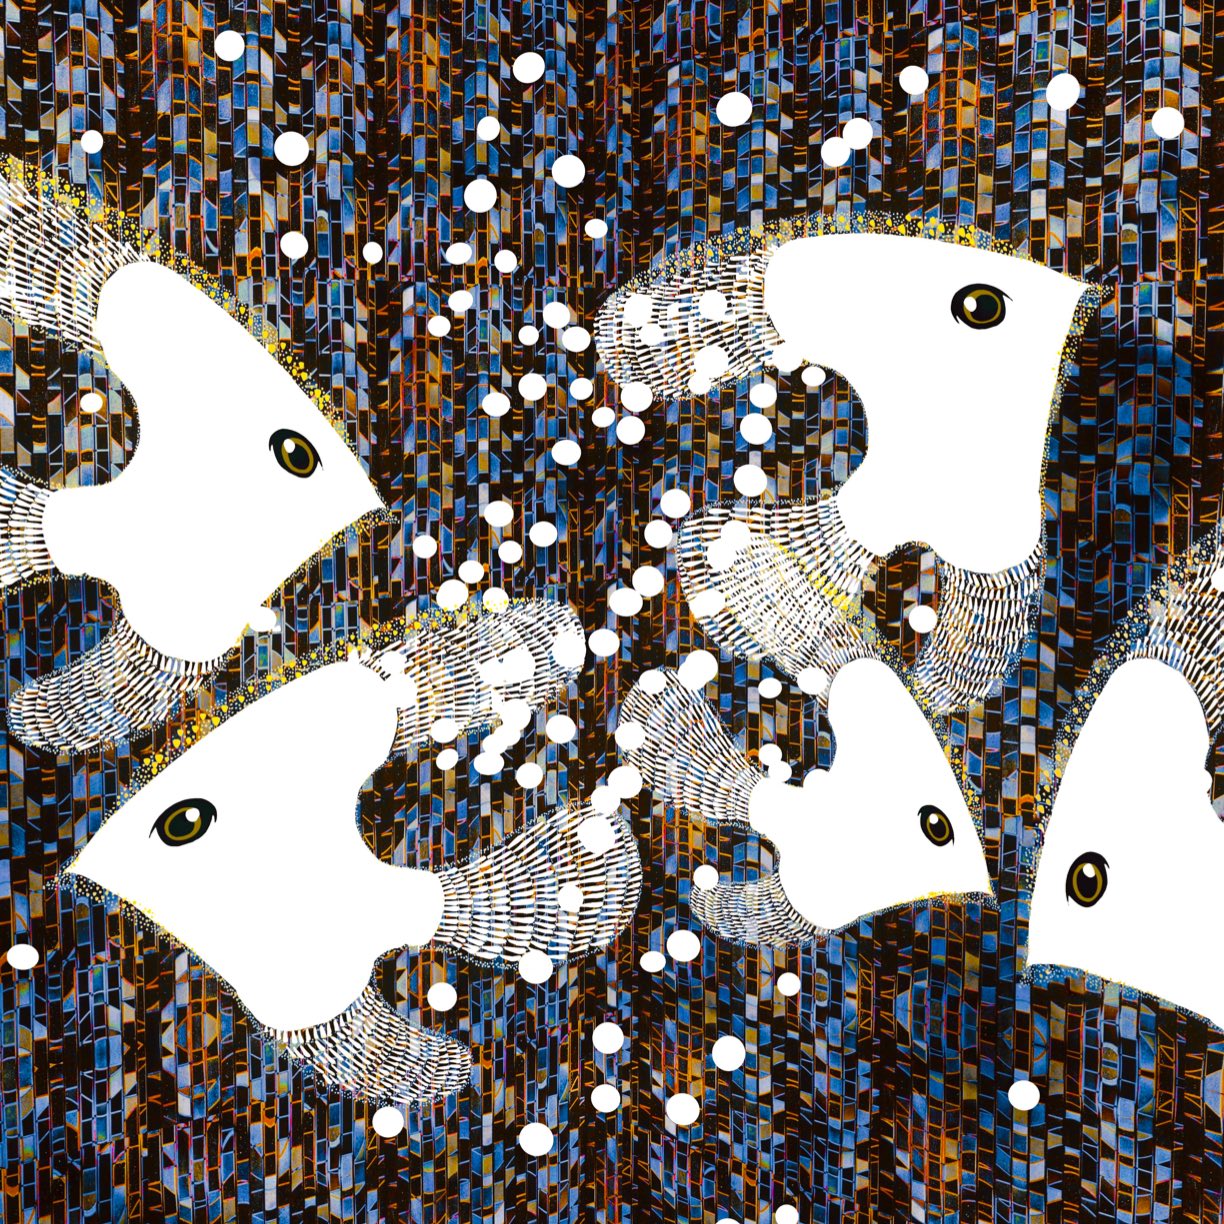 Atsushigraphのデジタルアート作品「White Fish」の画像です。